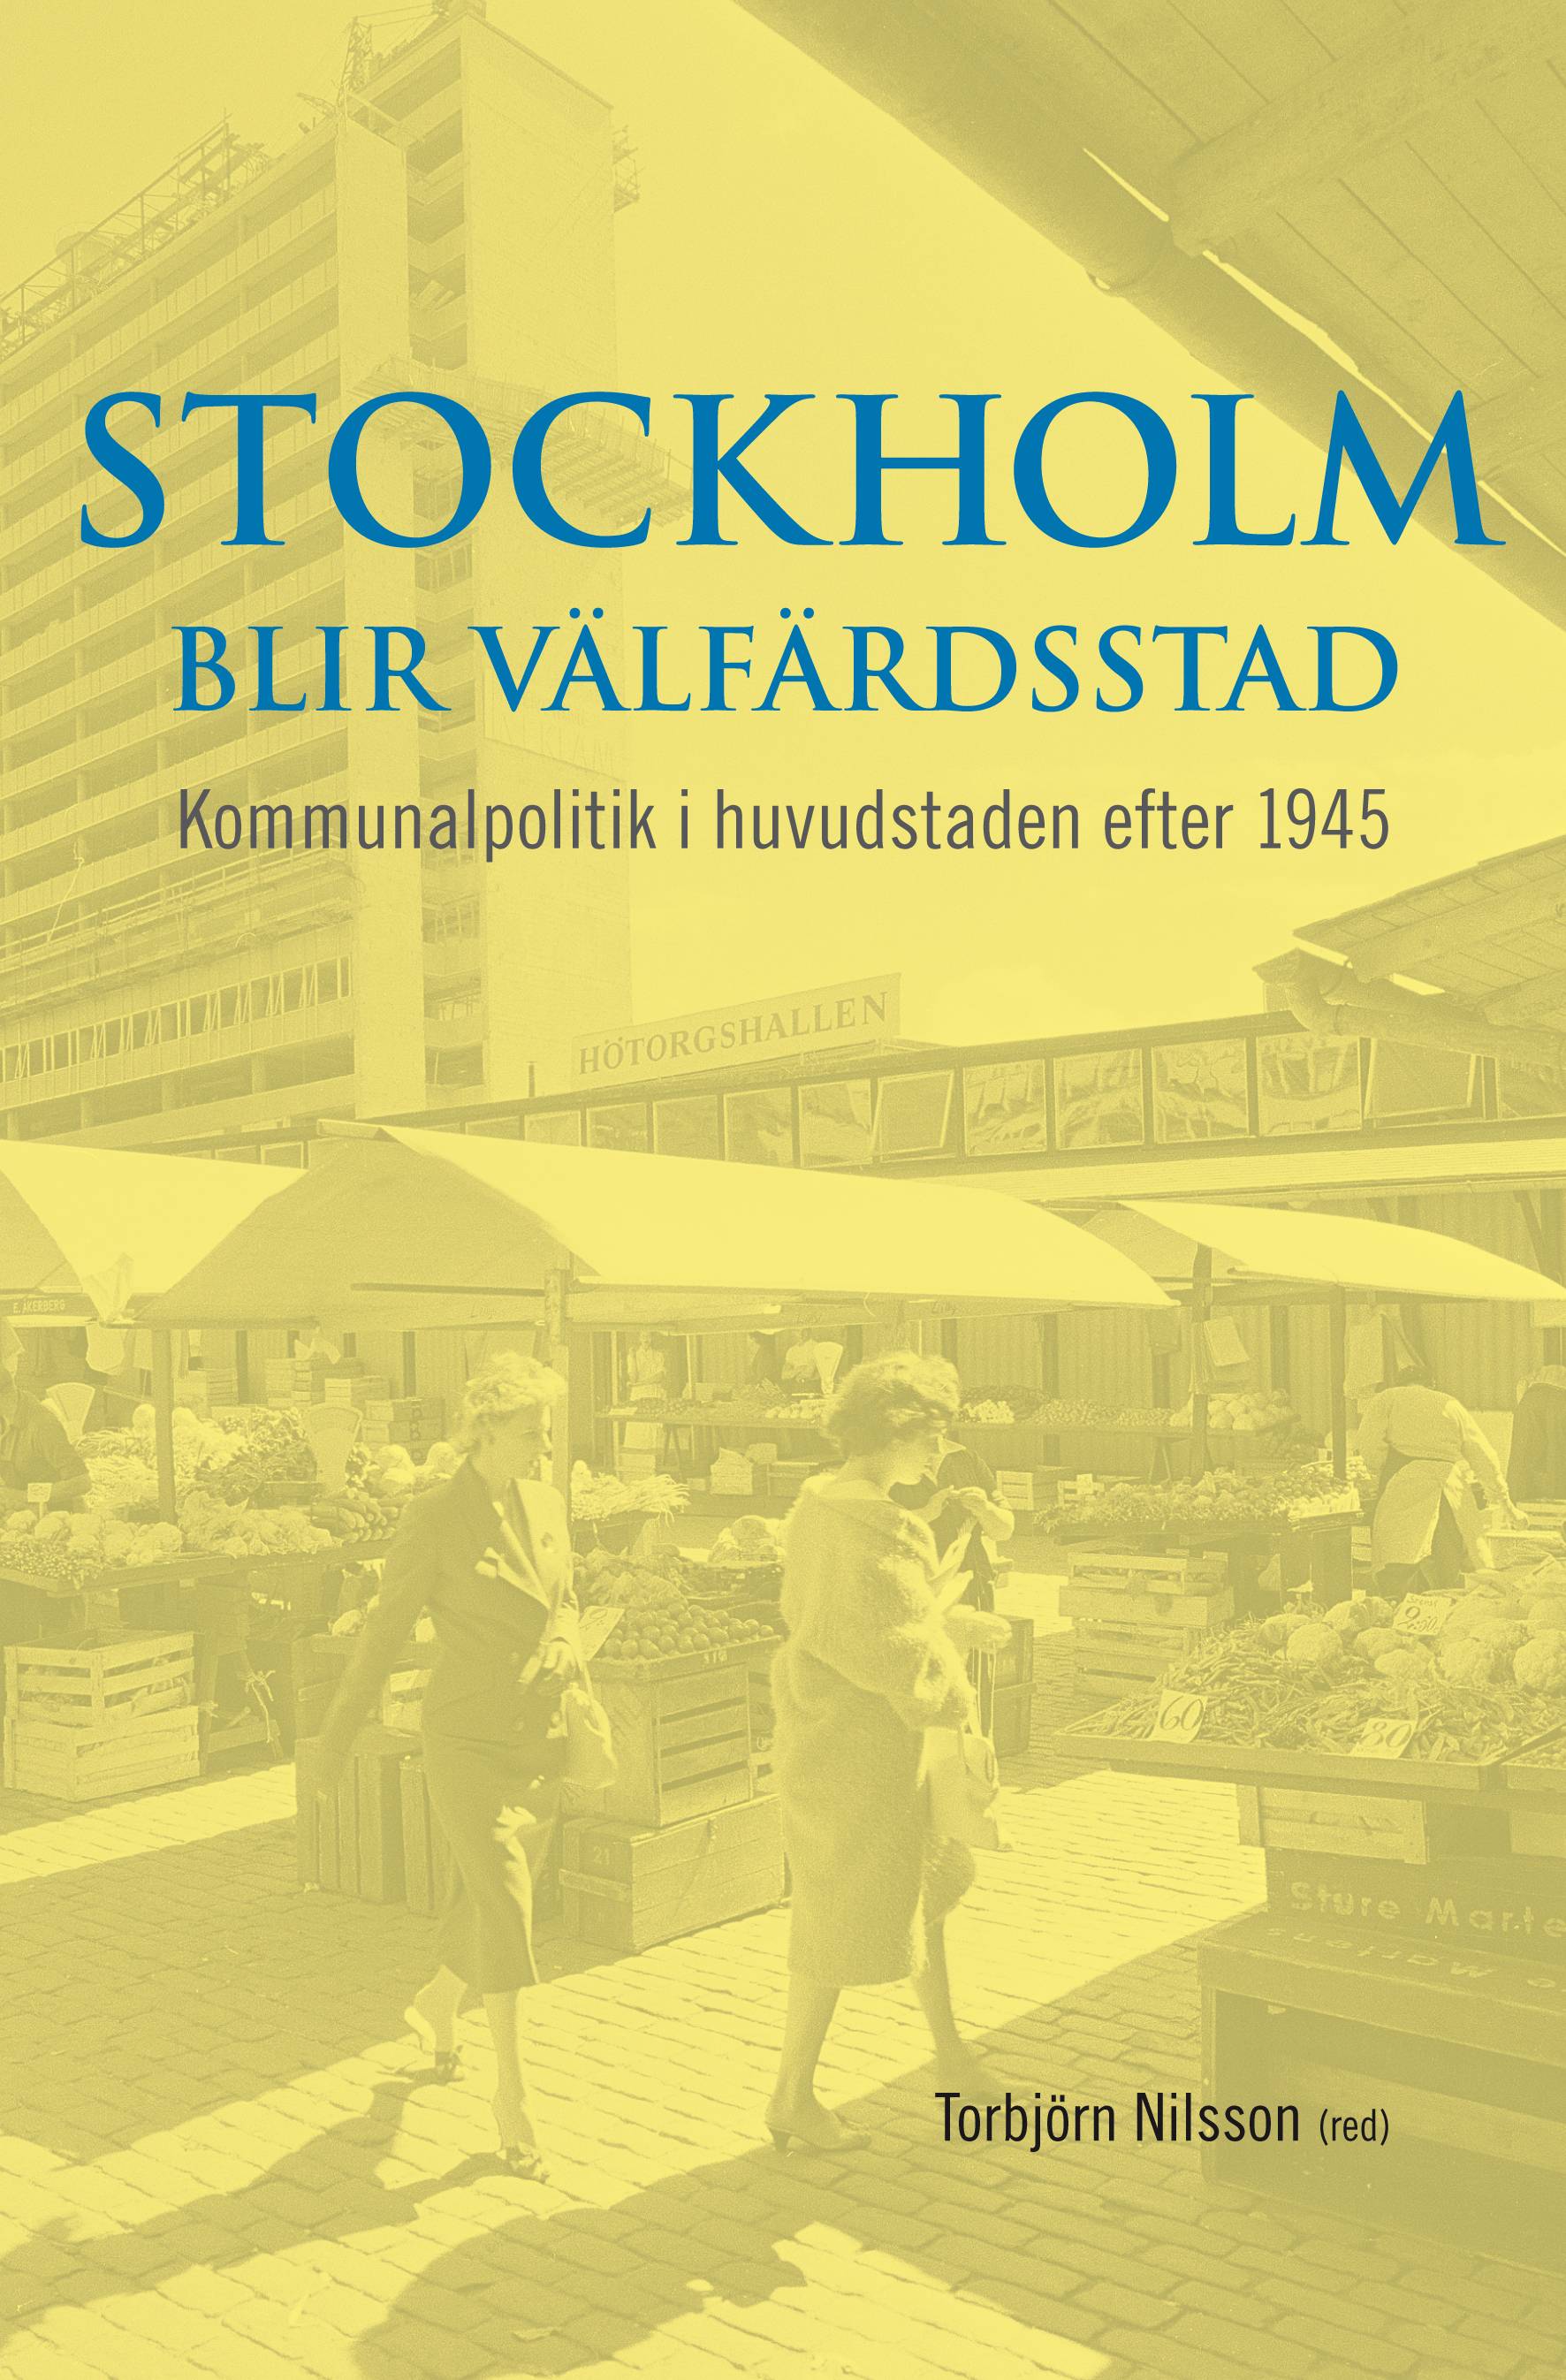 Stockholm blir välfärdsstad : kommunalpolitik i huvudstaden efter 1945